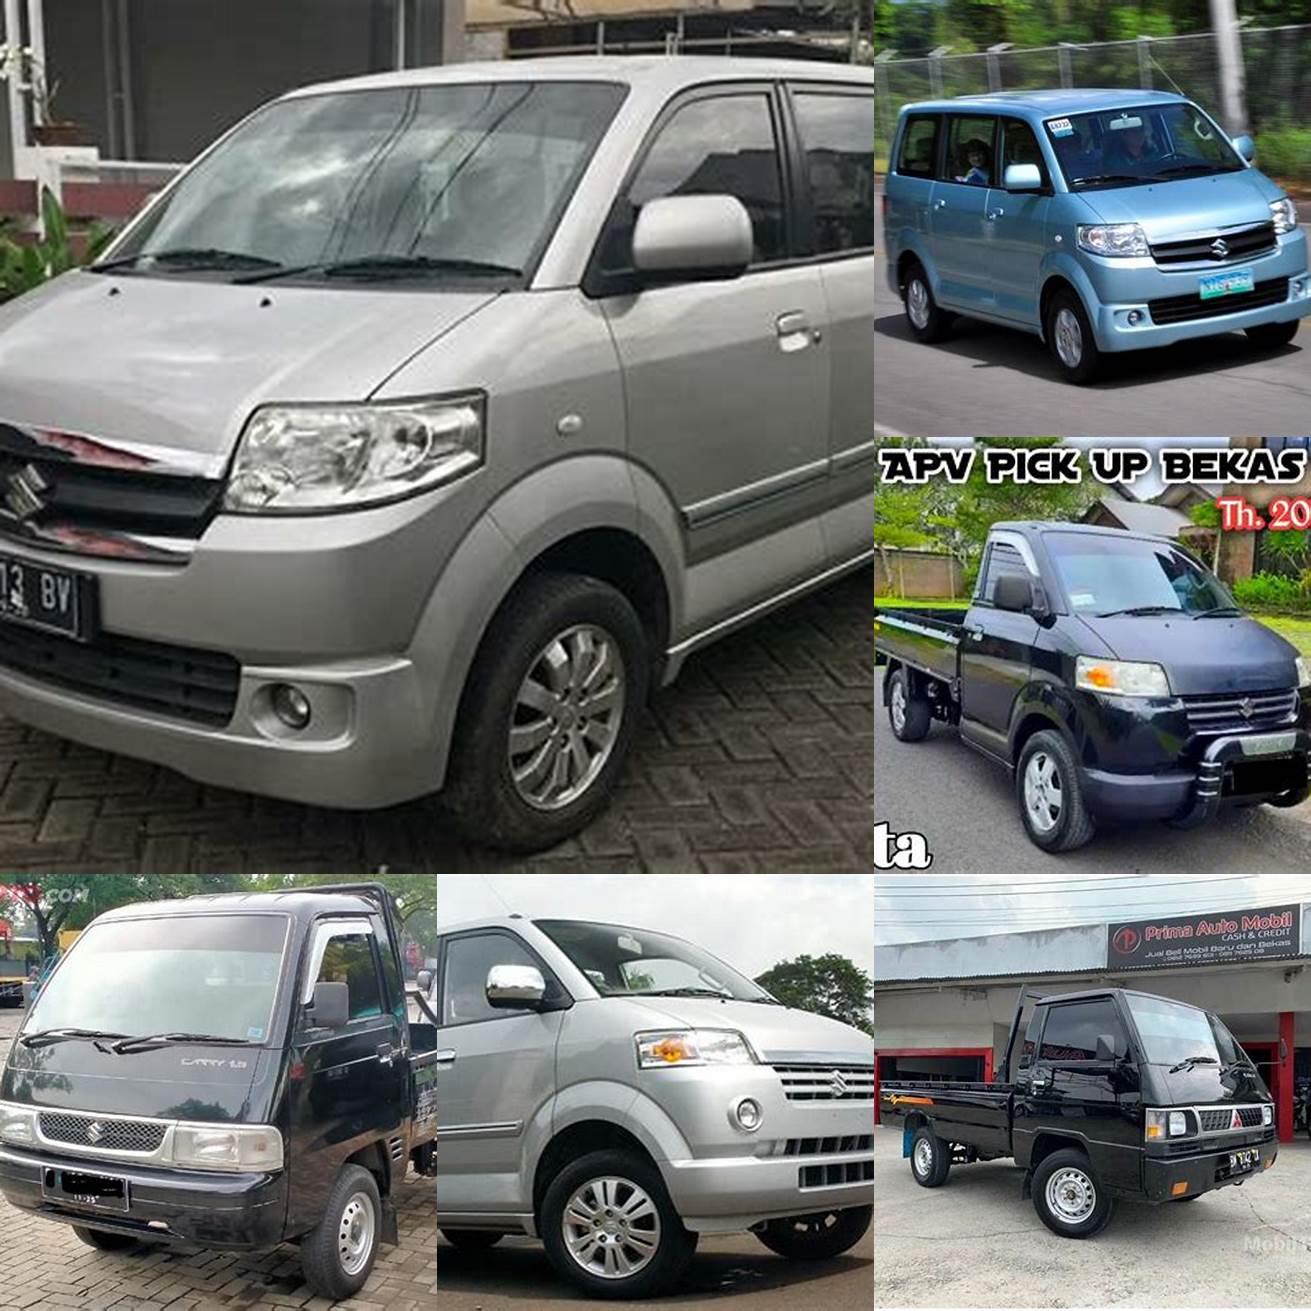 Harga mobil APV Pick Up bekas tahun 2013 berkisar antara 70 - 120 juta rupiah